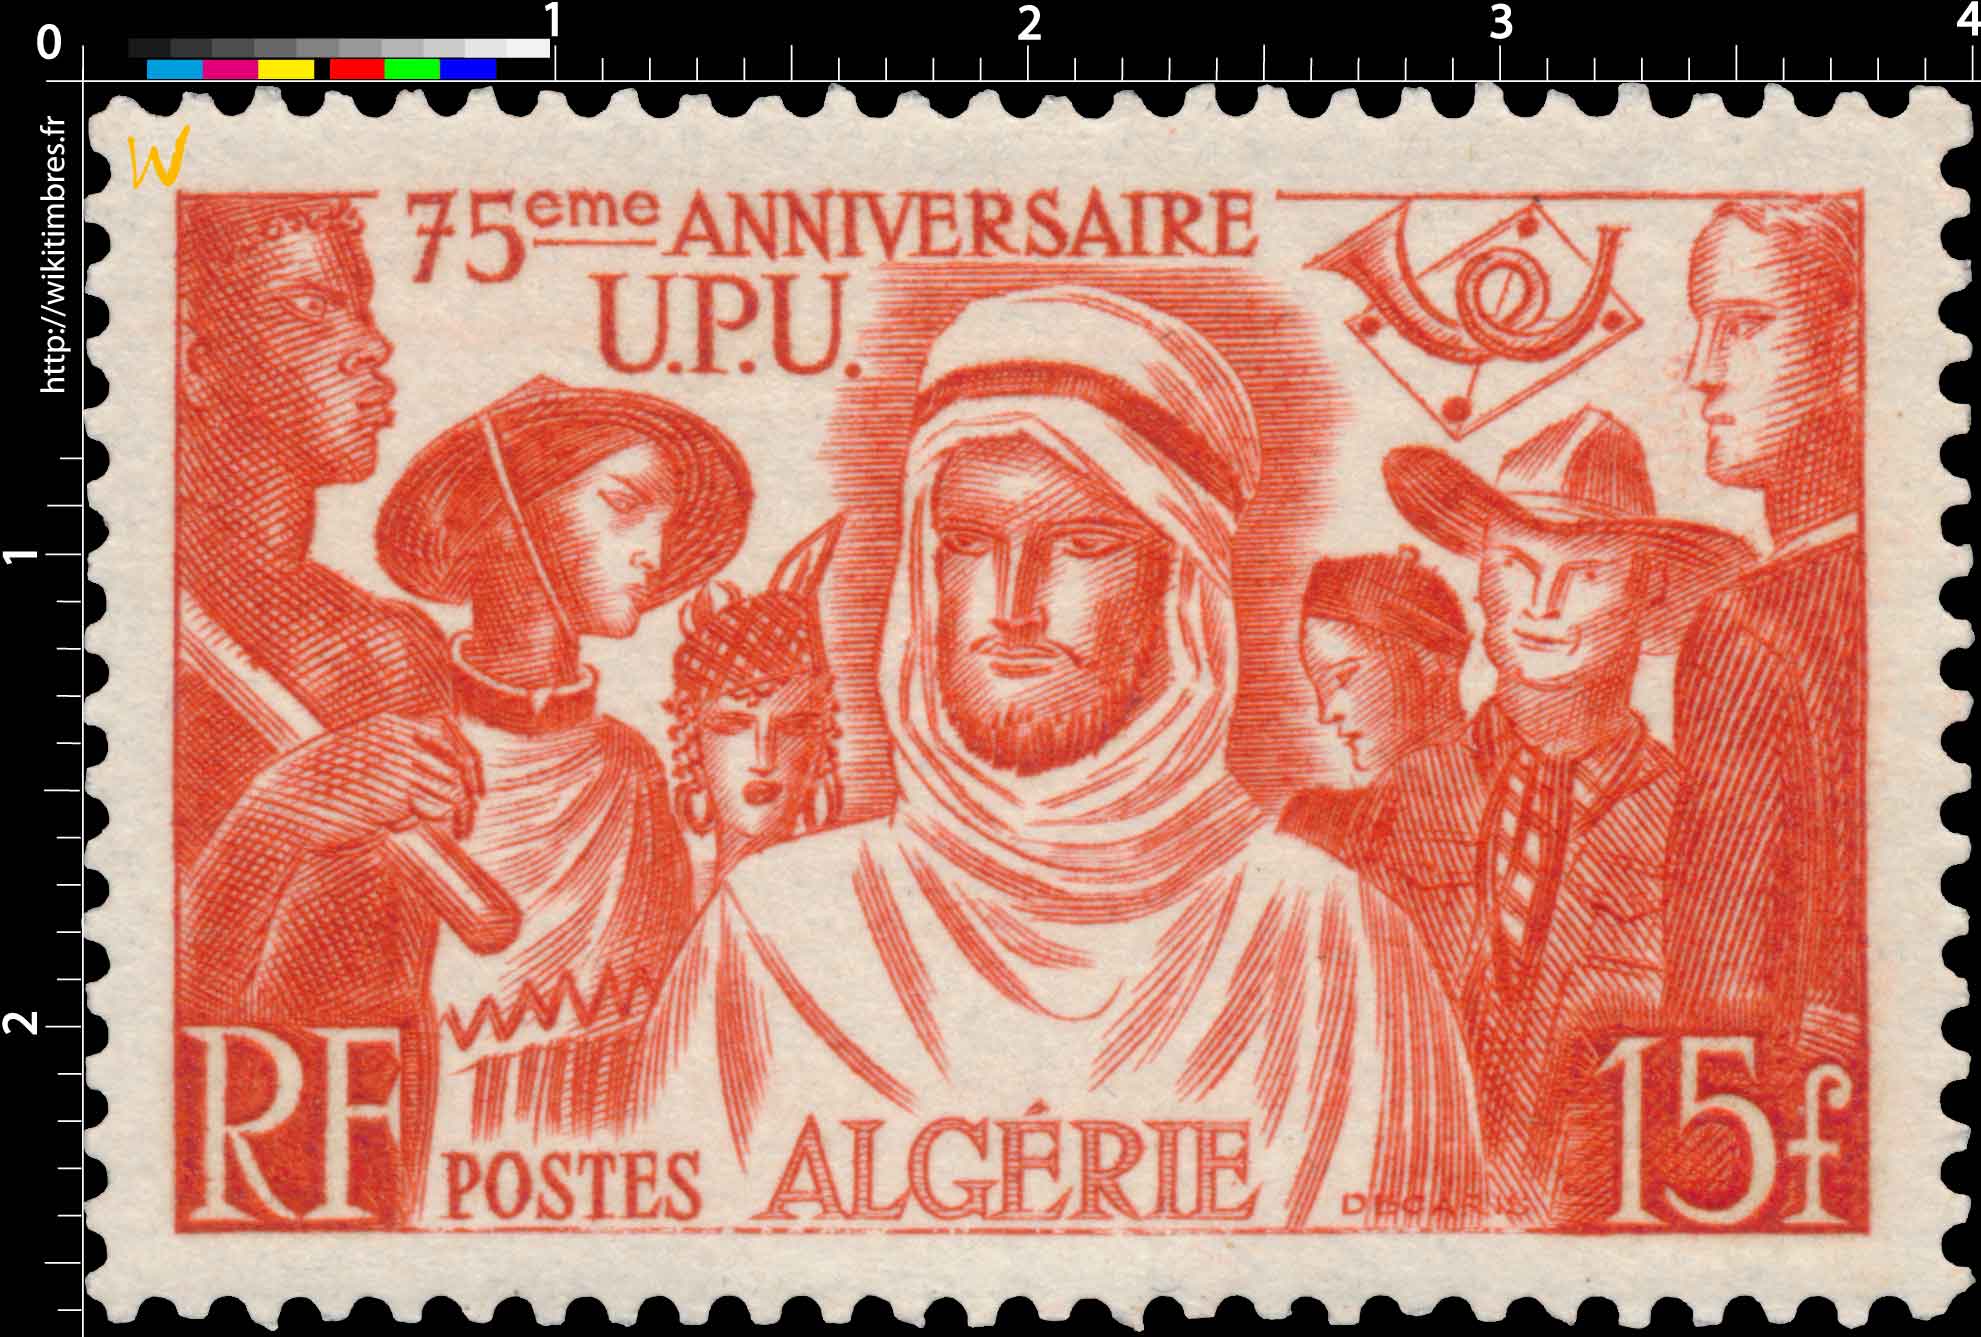 Algérie - 75ème anniversaire U.P.U.